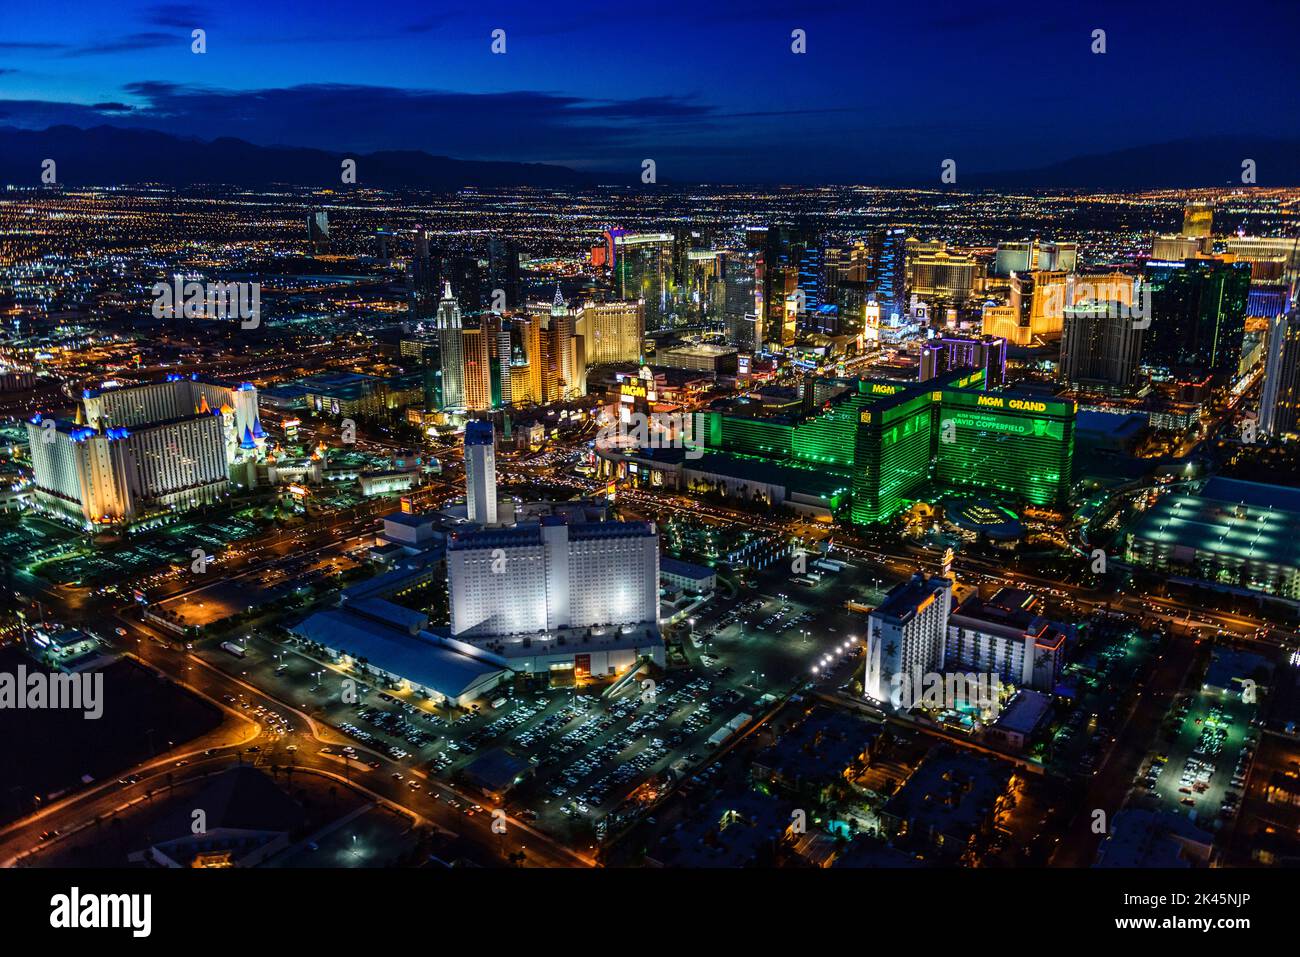 Vue aérienne de la ville de Las Vegas au crépuscule, lumières de la ville et grands bâtiments de la destination de voyage. Banque D'Images